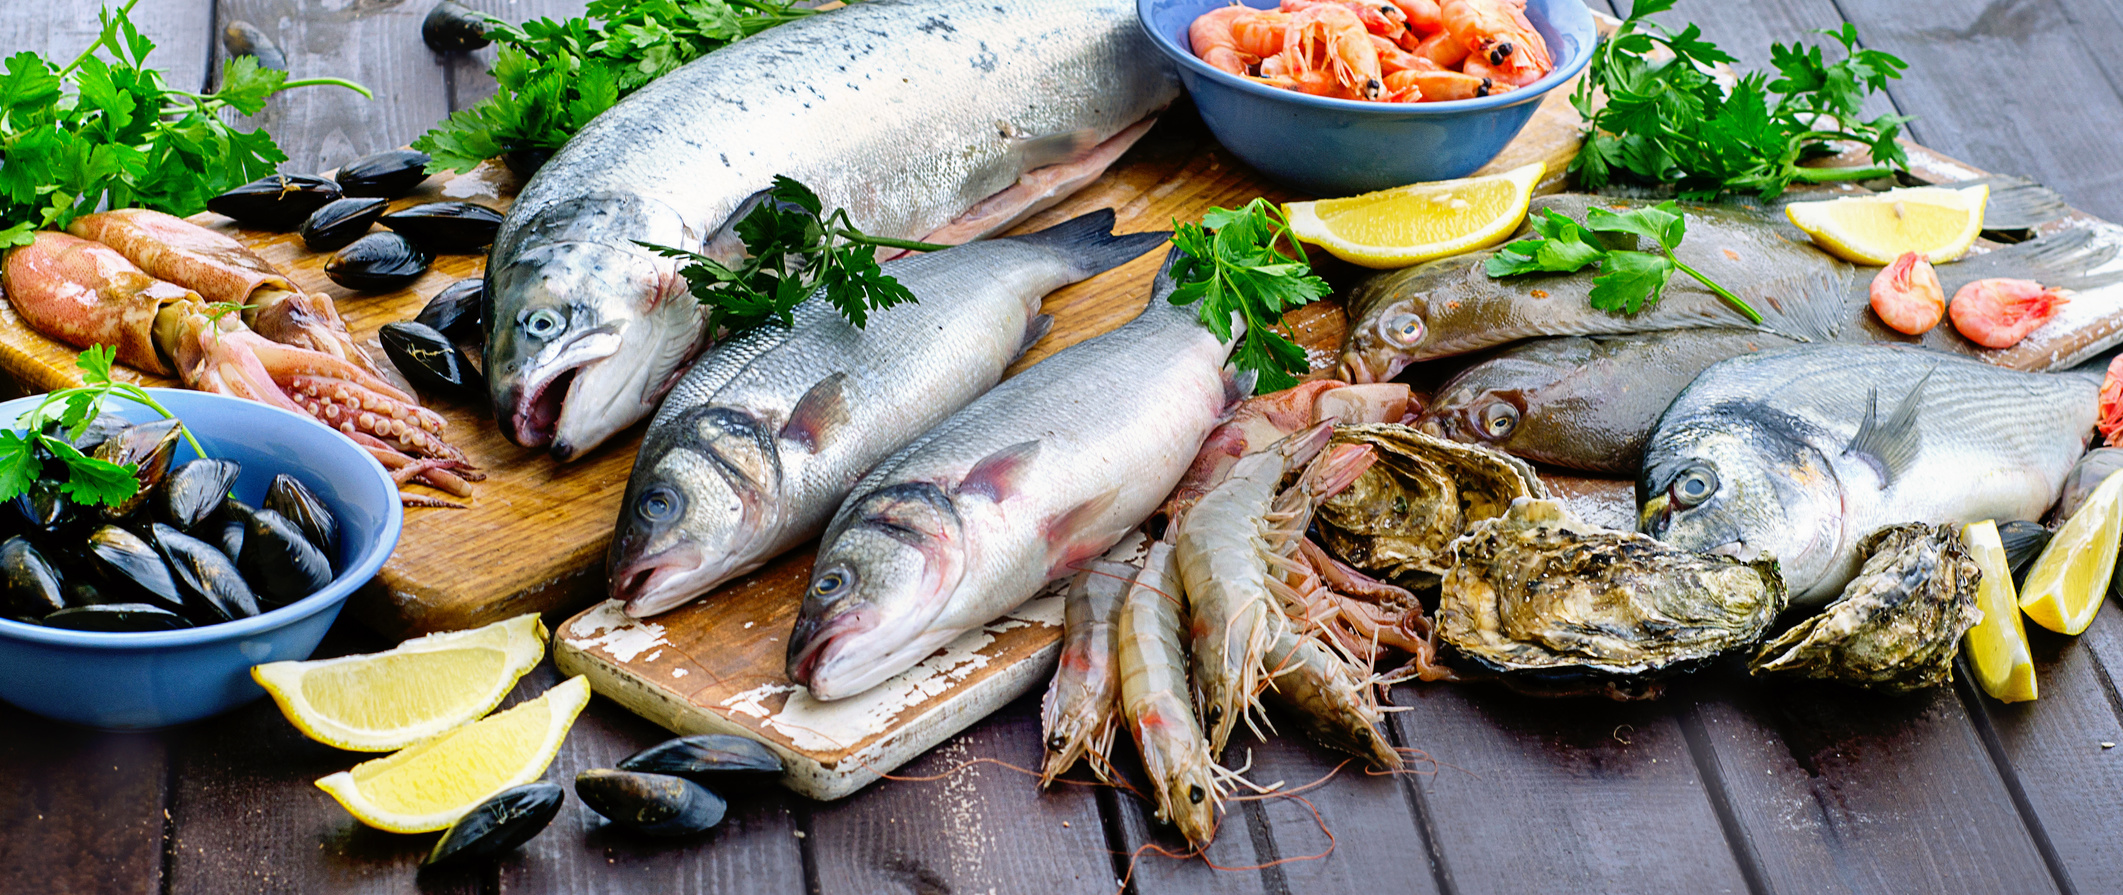 Fish product. Рыба и морепродукты. Свежая рыба. Рыба и рыбные продукты. Рыба в ассортименте.